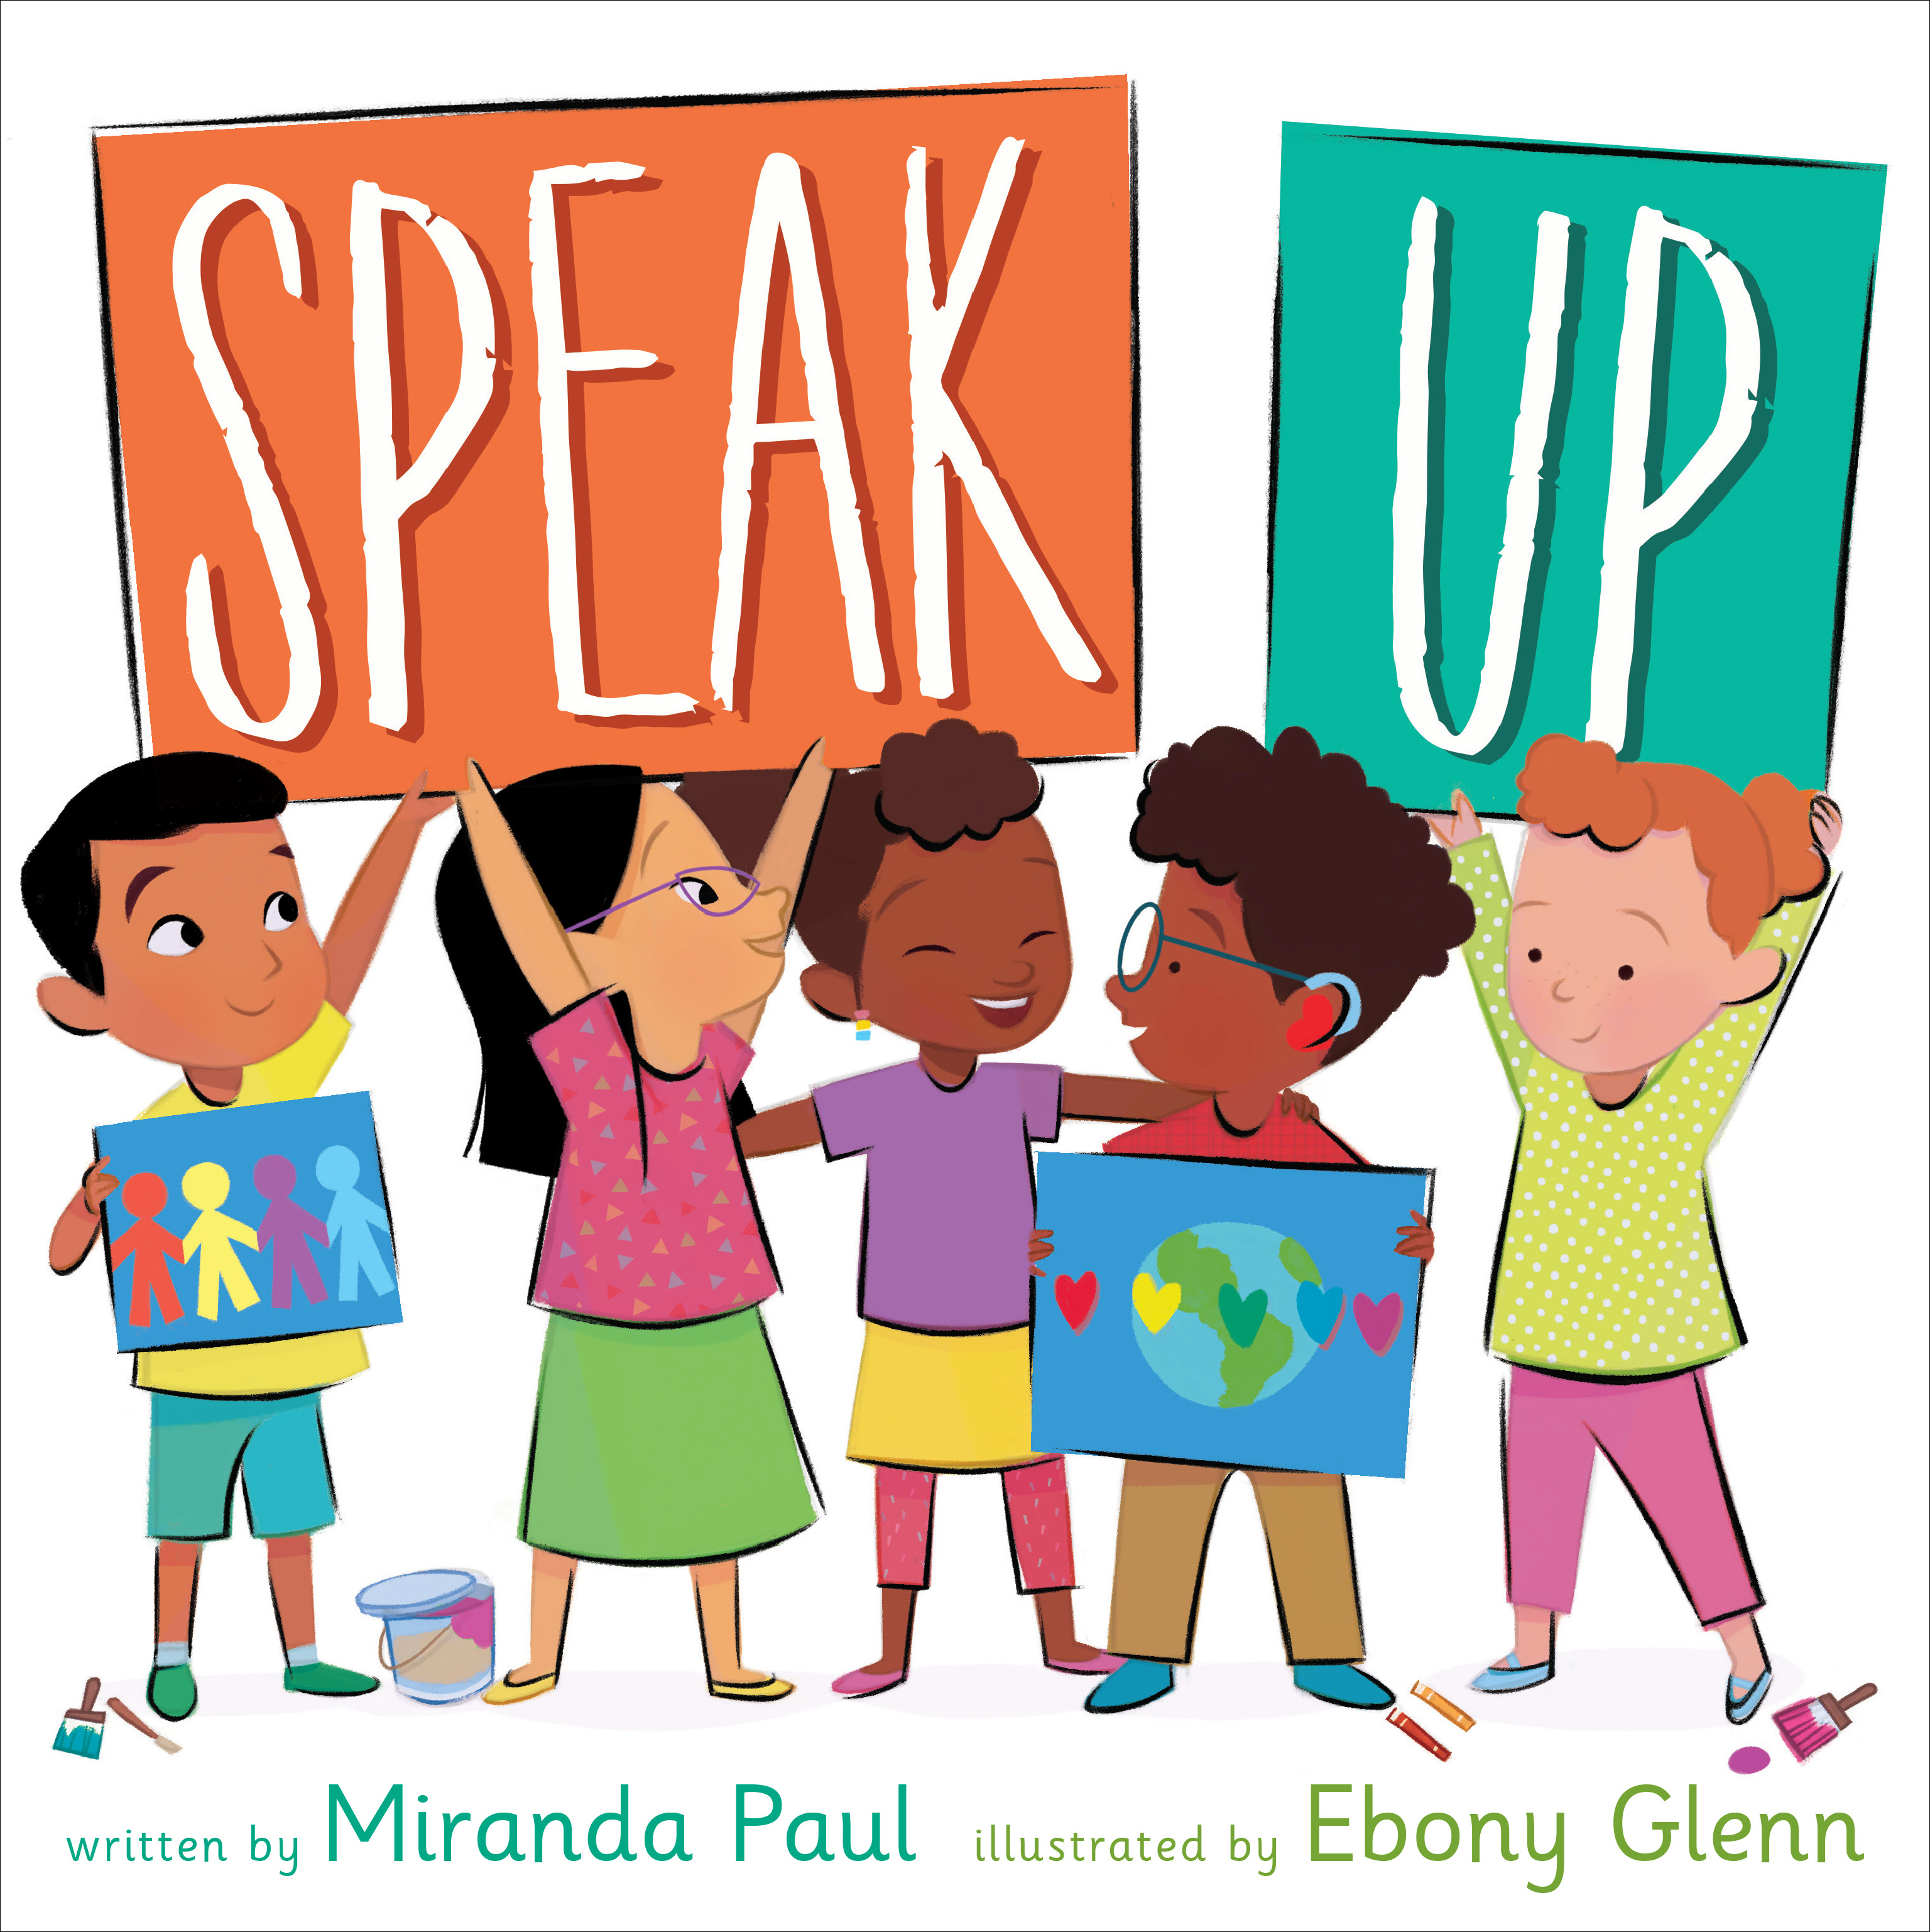 Speak Up in Kindle/PDF/EPUB